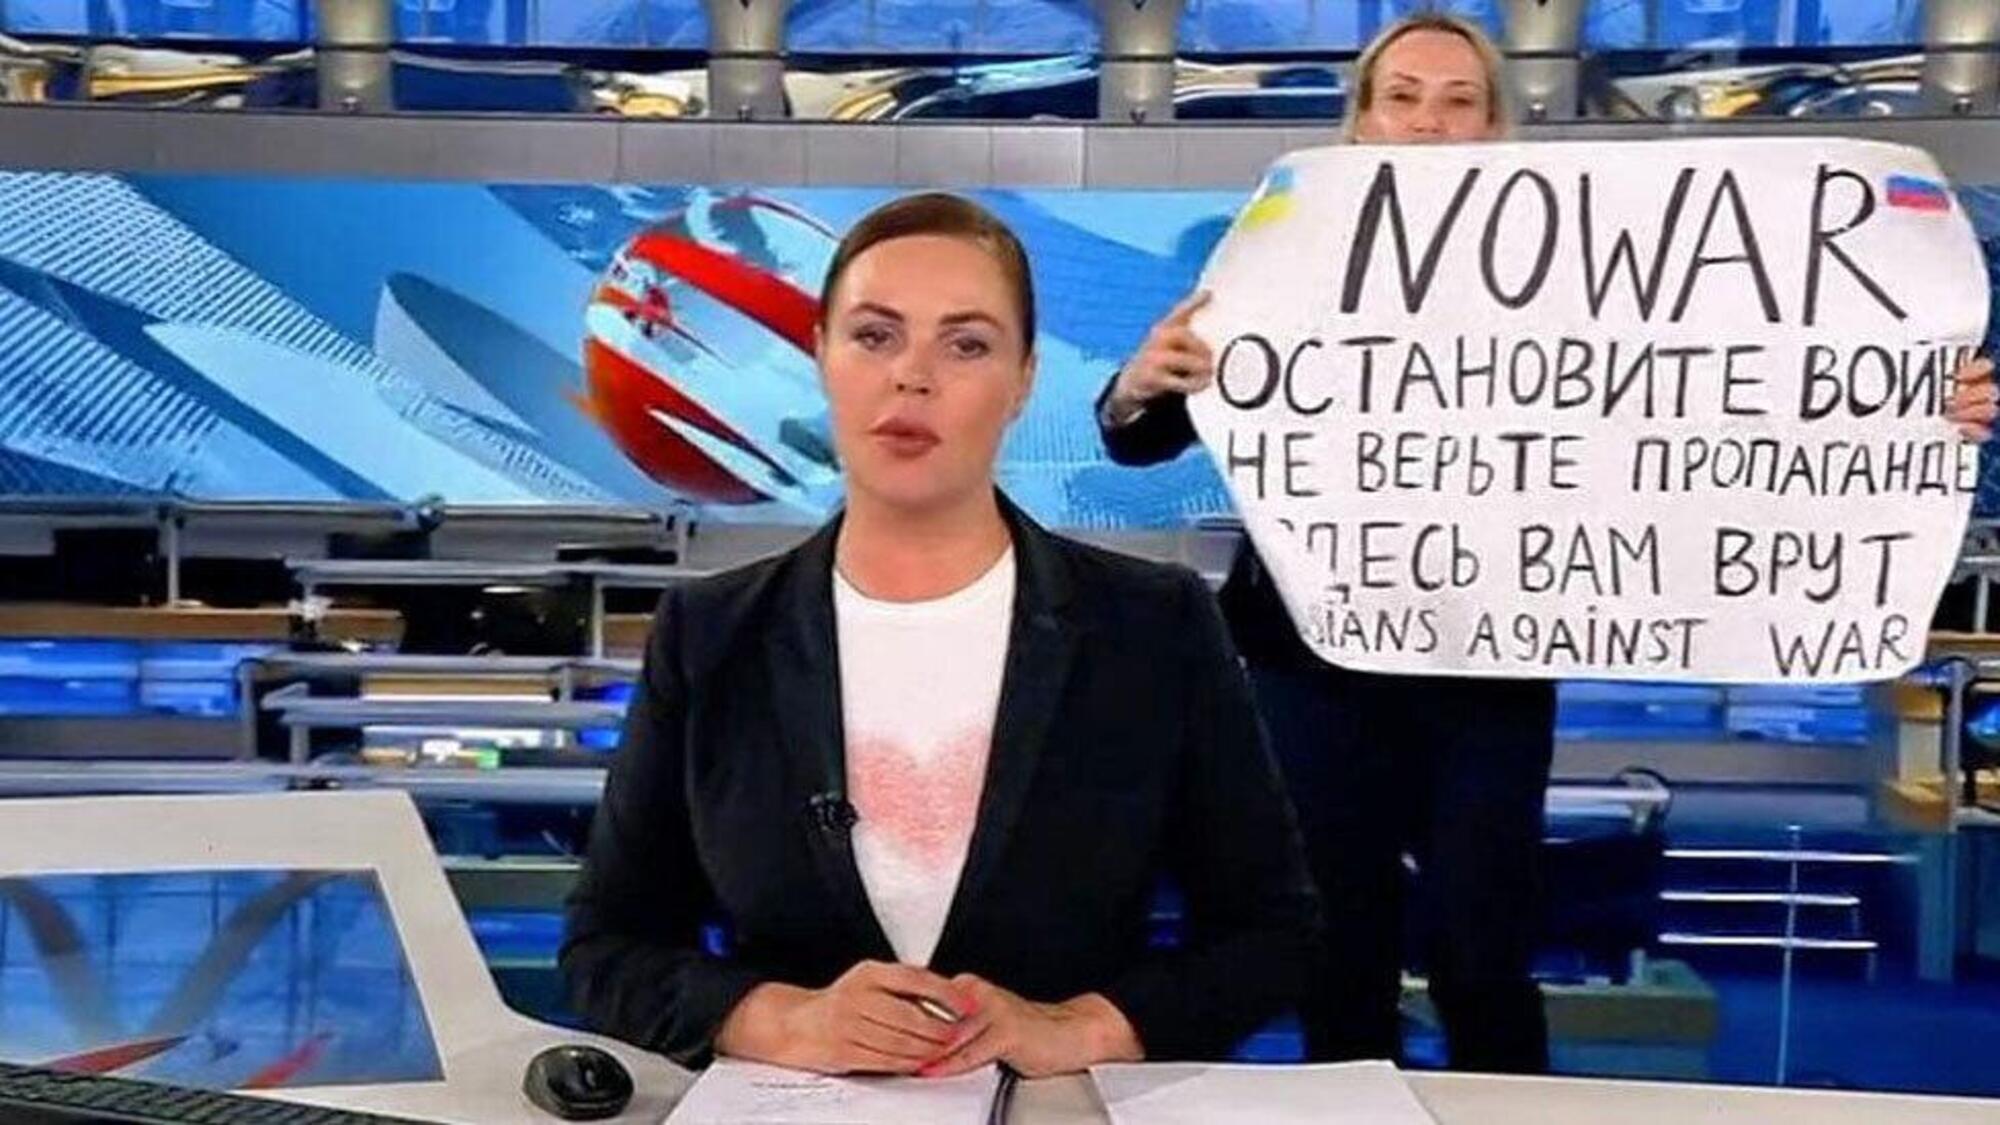 La giornalista Marina Ovsyannikova (sullo sfondo) diventa famosa per aver interrotto un tg russo con un cartello contro la guerra in Ucraina